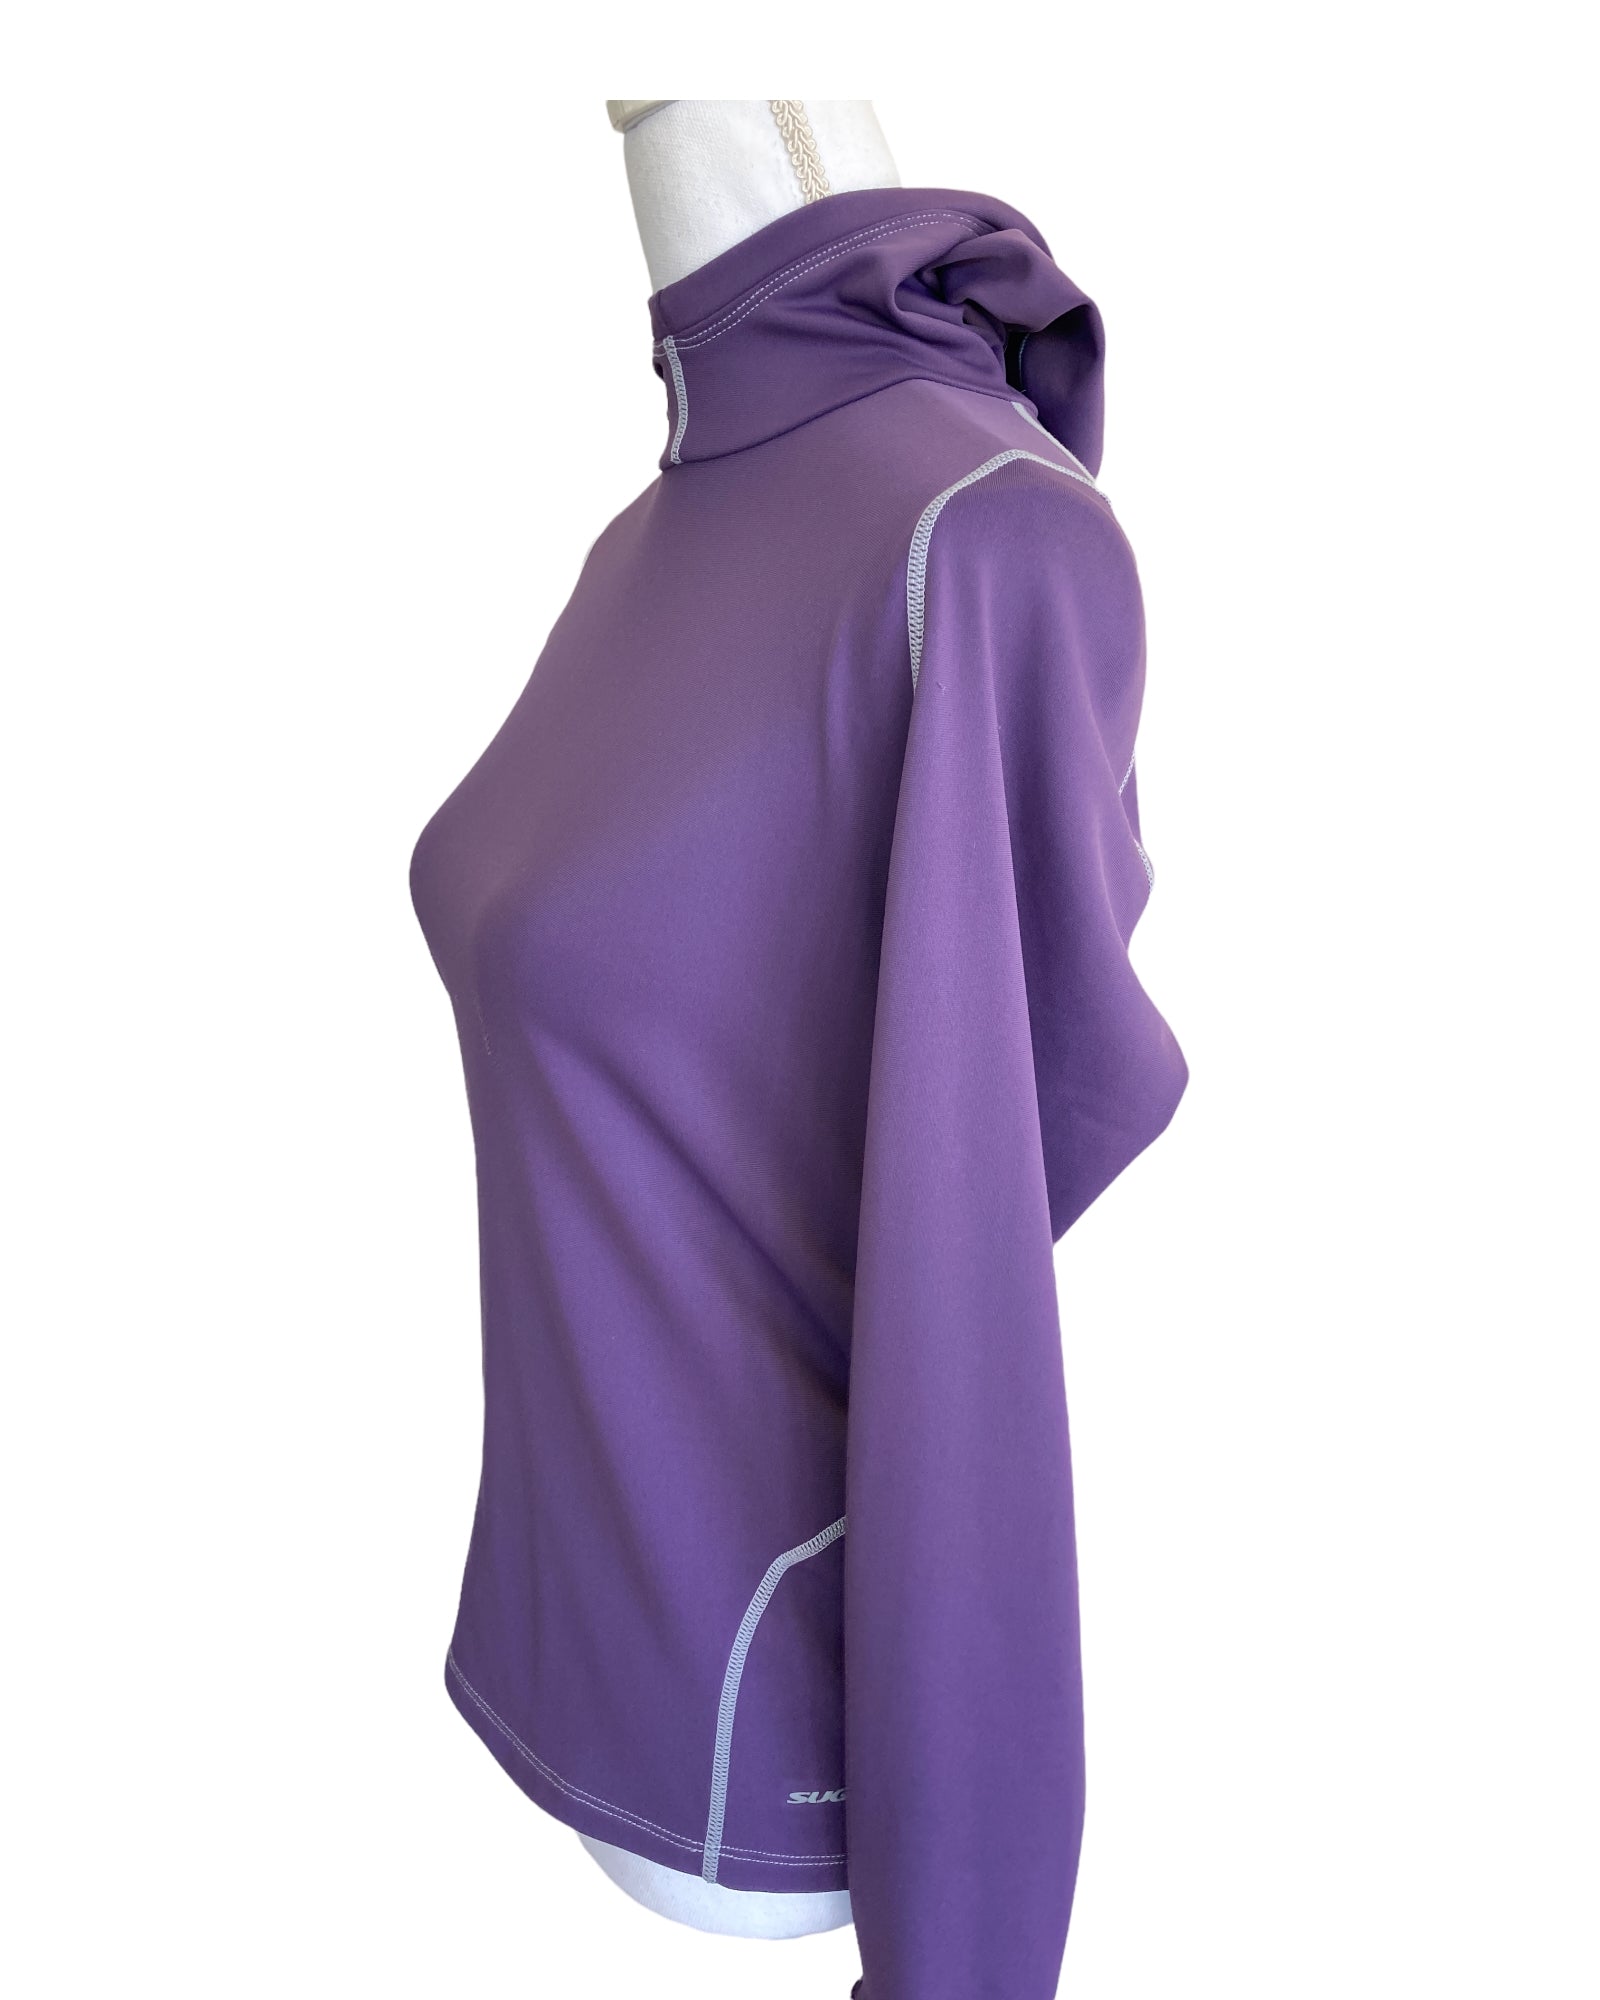 Sugoi Purple Hoodie Jacket, M